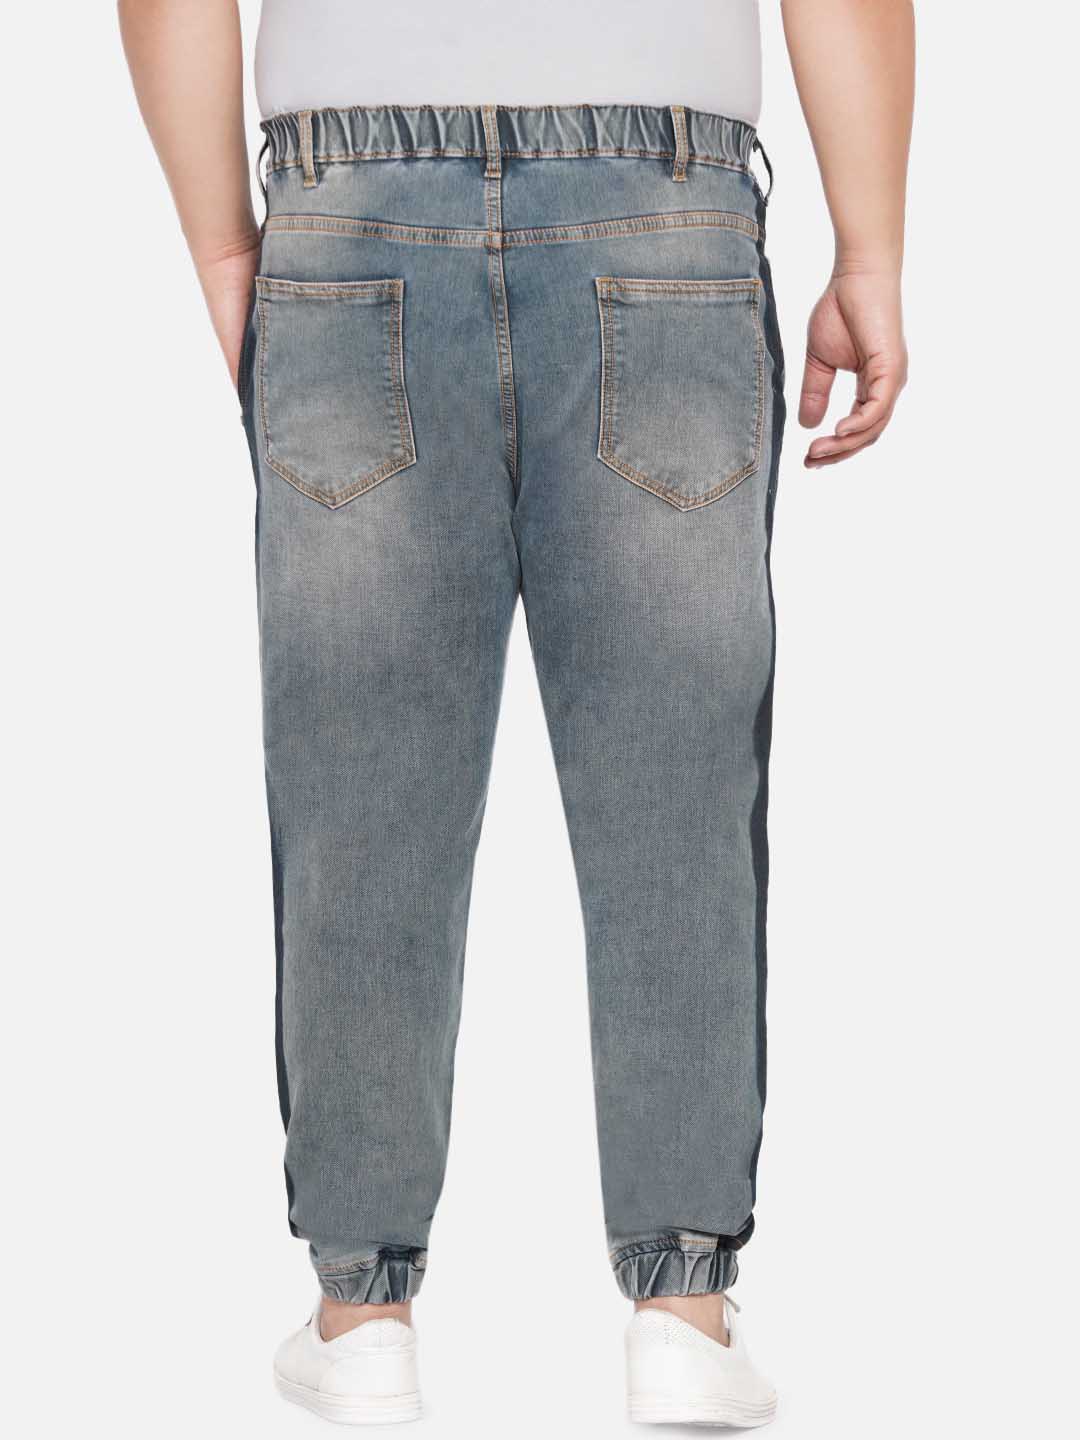 bottomwear/jeans/JPJ12231/jpj12231-5.jpg